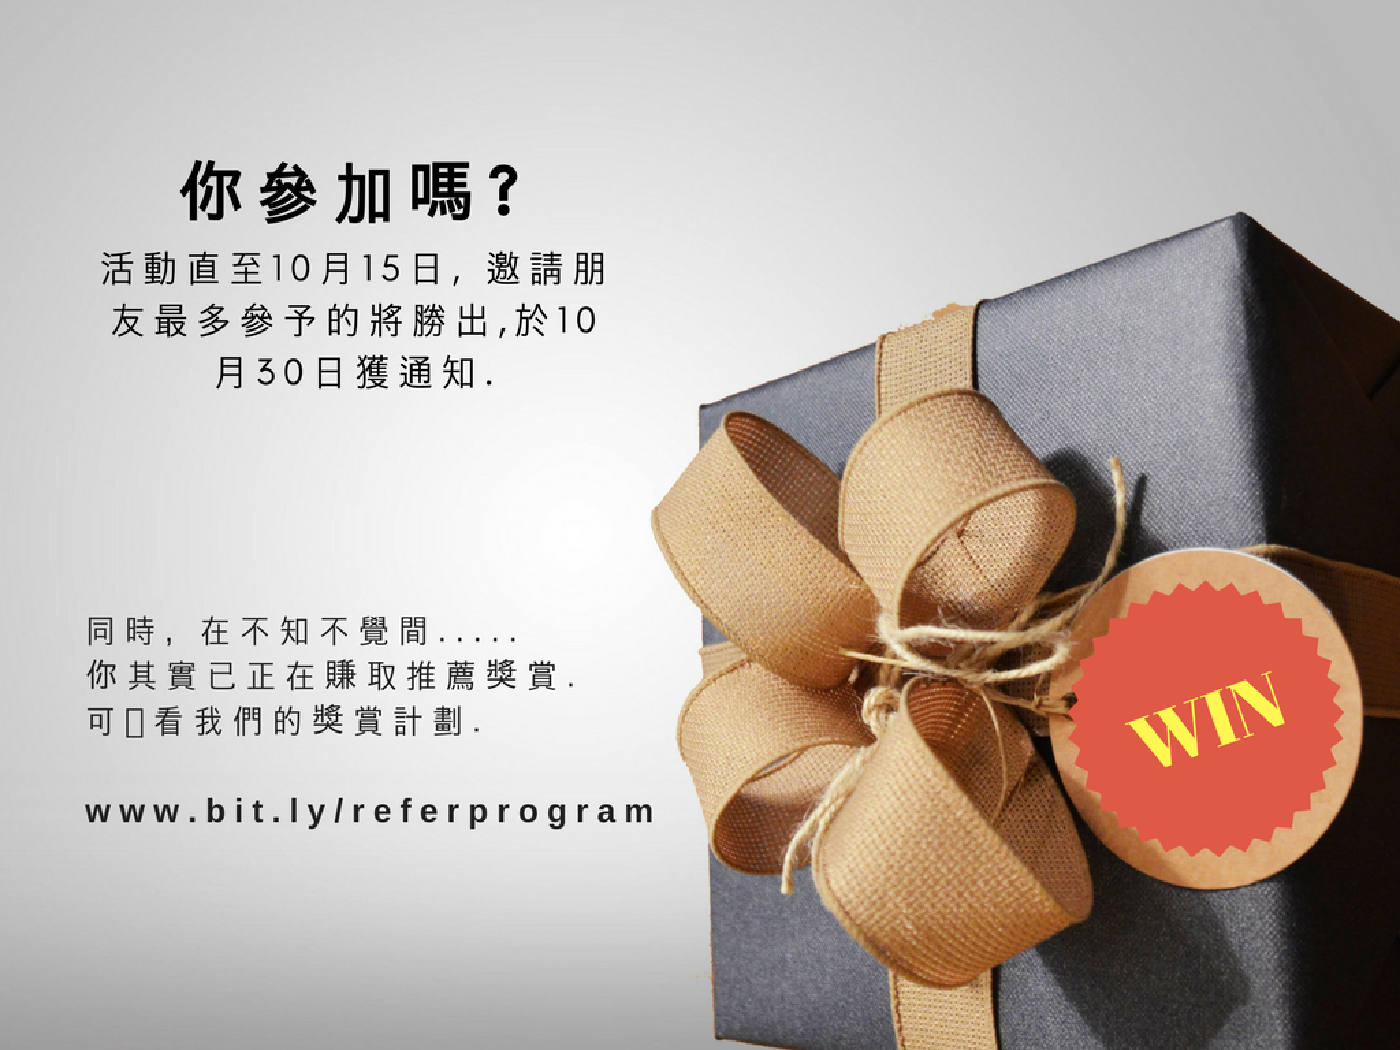 Win HK$500 Campaign